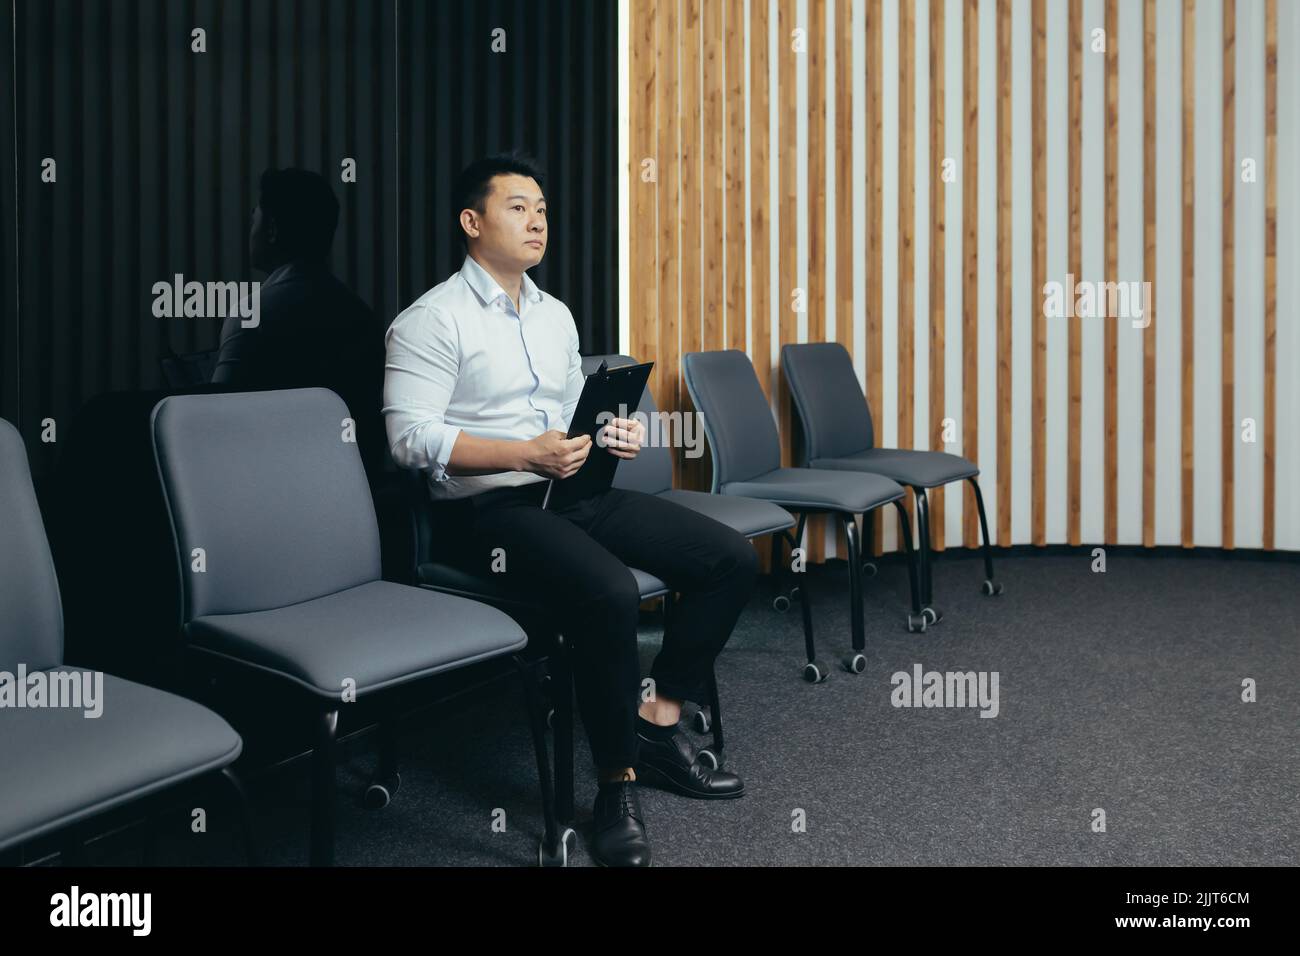 Un jeune homme asiatique beau attend dans le hall d'accueil un entretien pour un emploi dans un bureau, une banque, une entreprise. Il tient un dossier dans ses mains, s'inquiète, le secoue Banque D'Images